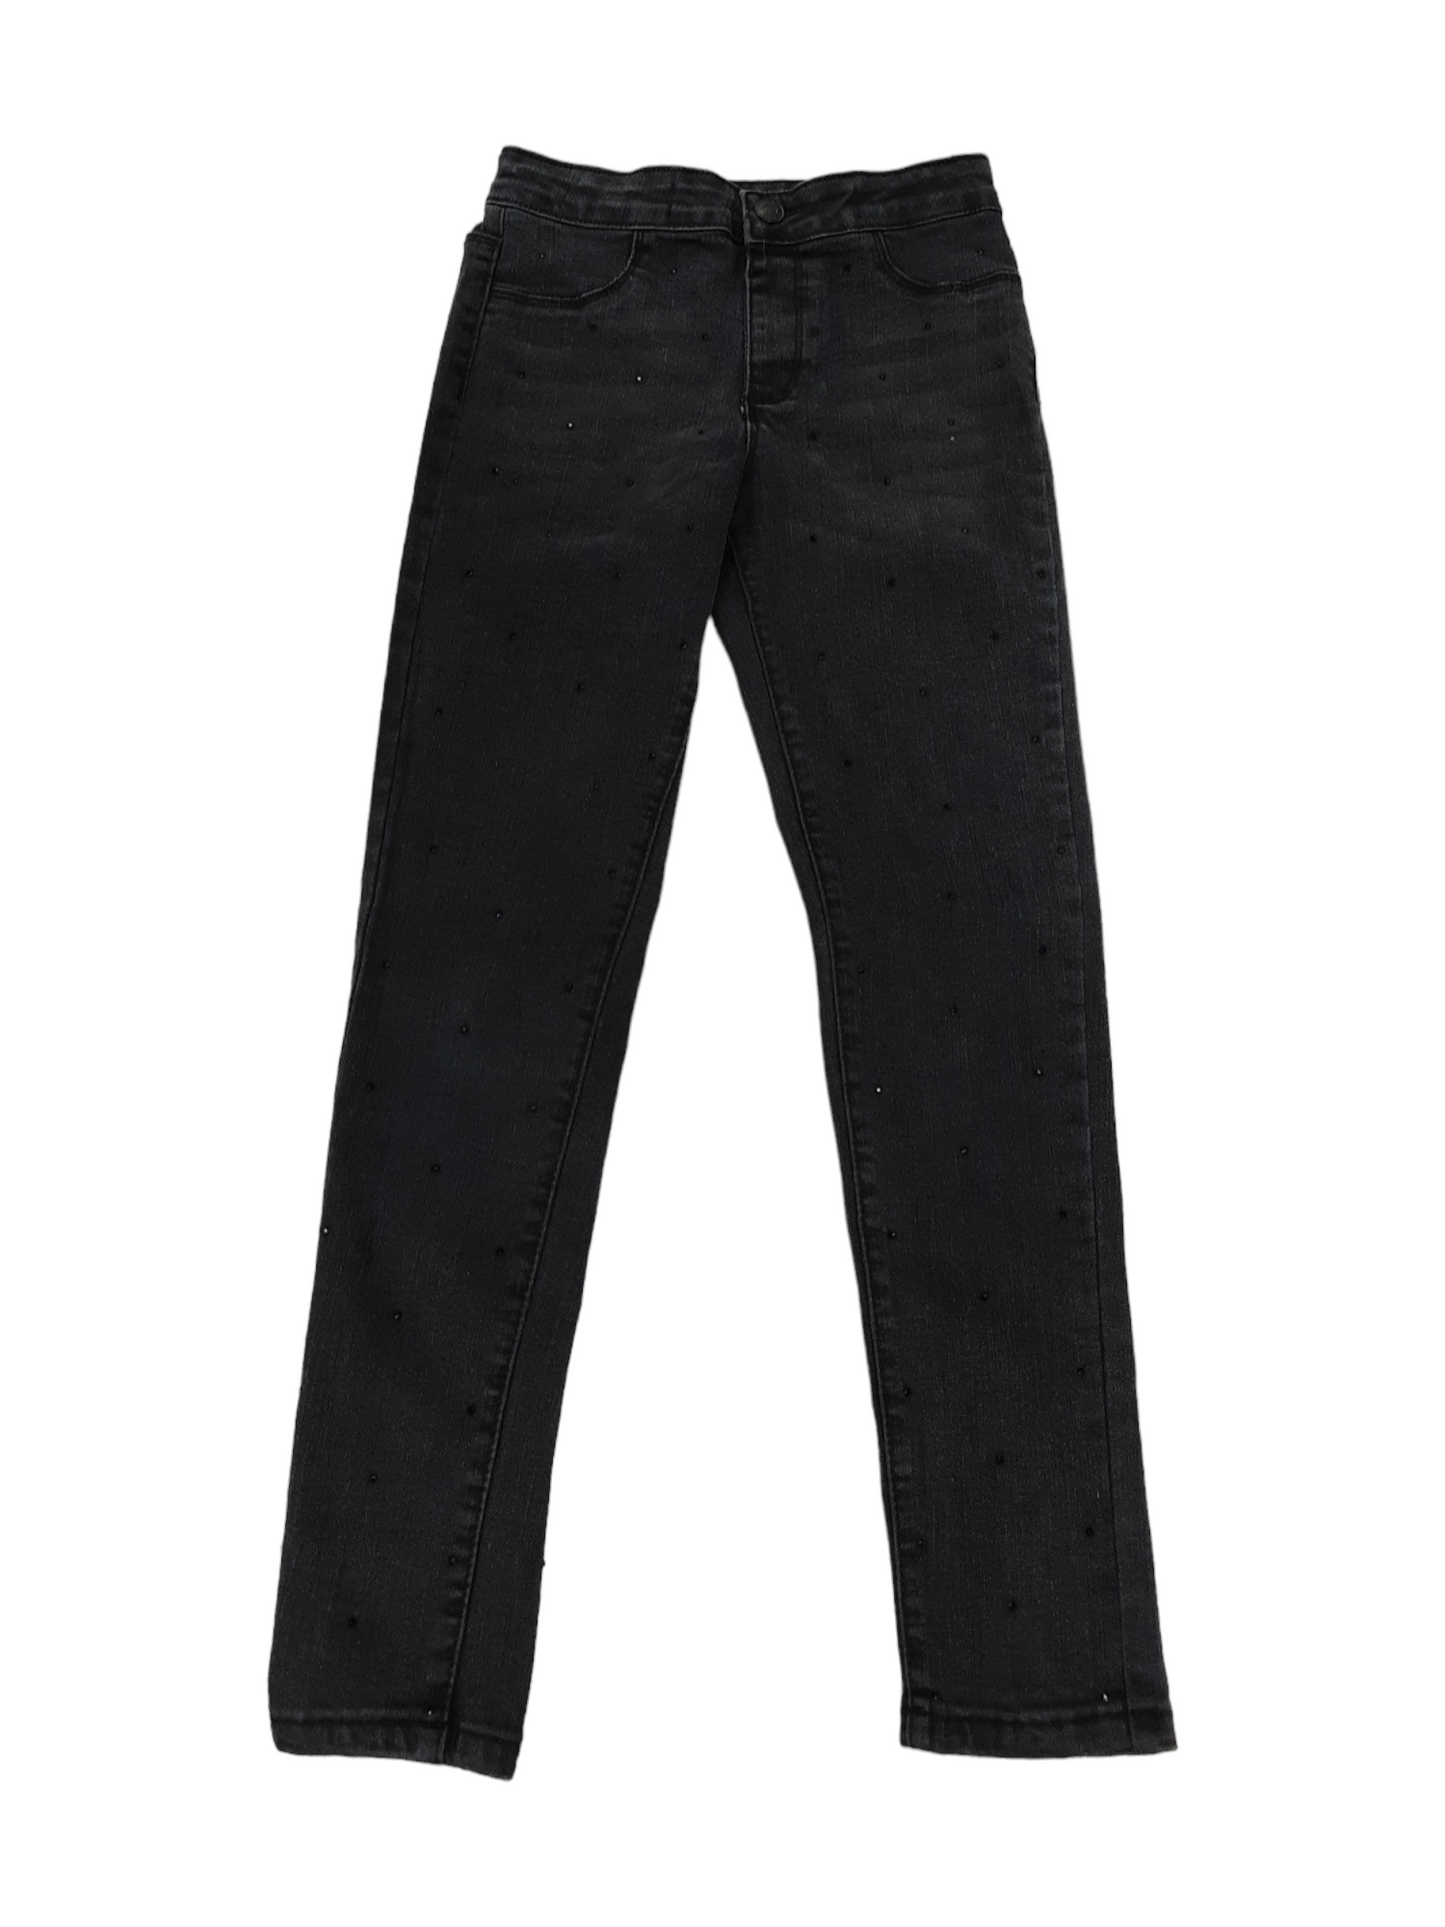 Studded black jeans size 7